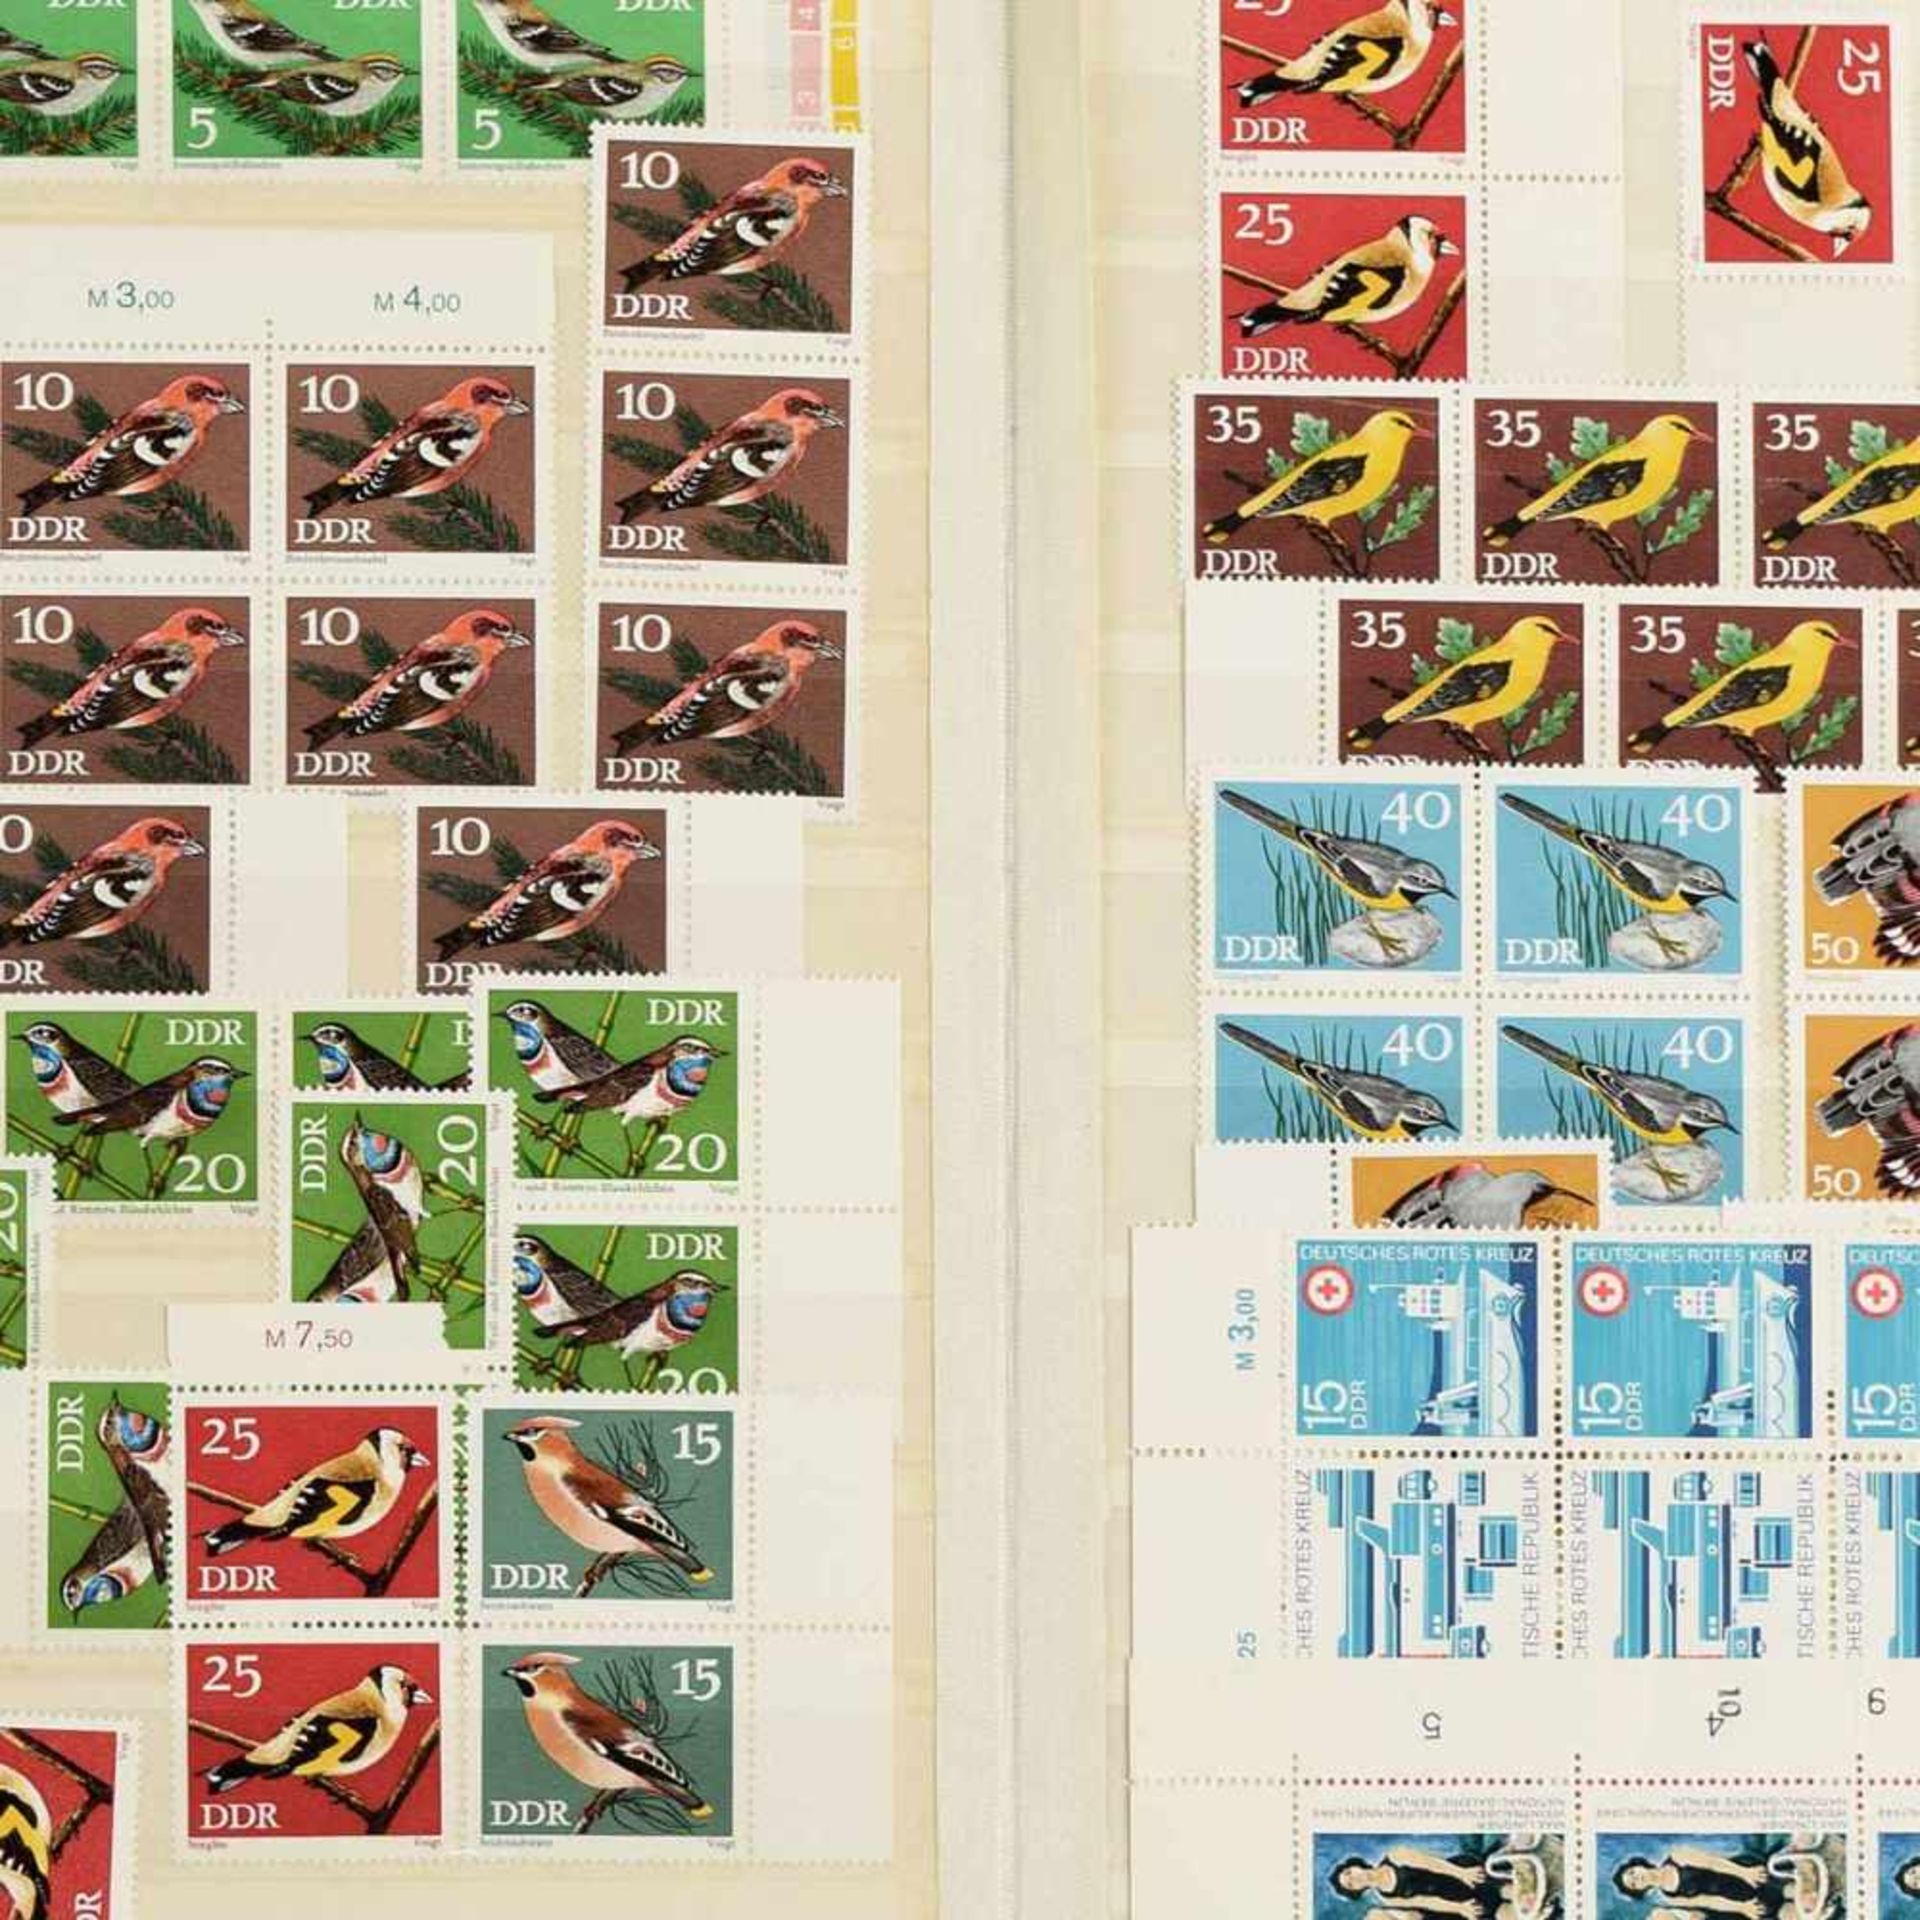 Sammlung Briefmarken dabei u.a.: 1 x Posten Ersttagsbriefe, Belege, Ganzsachen DDR, 1 x Posten